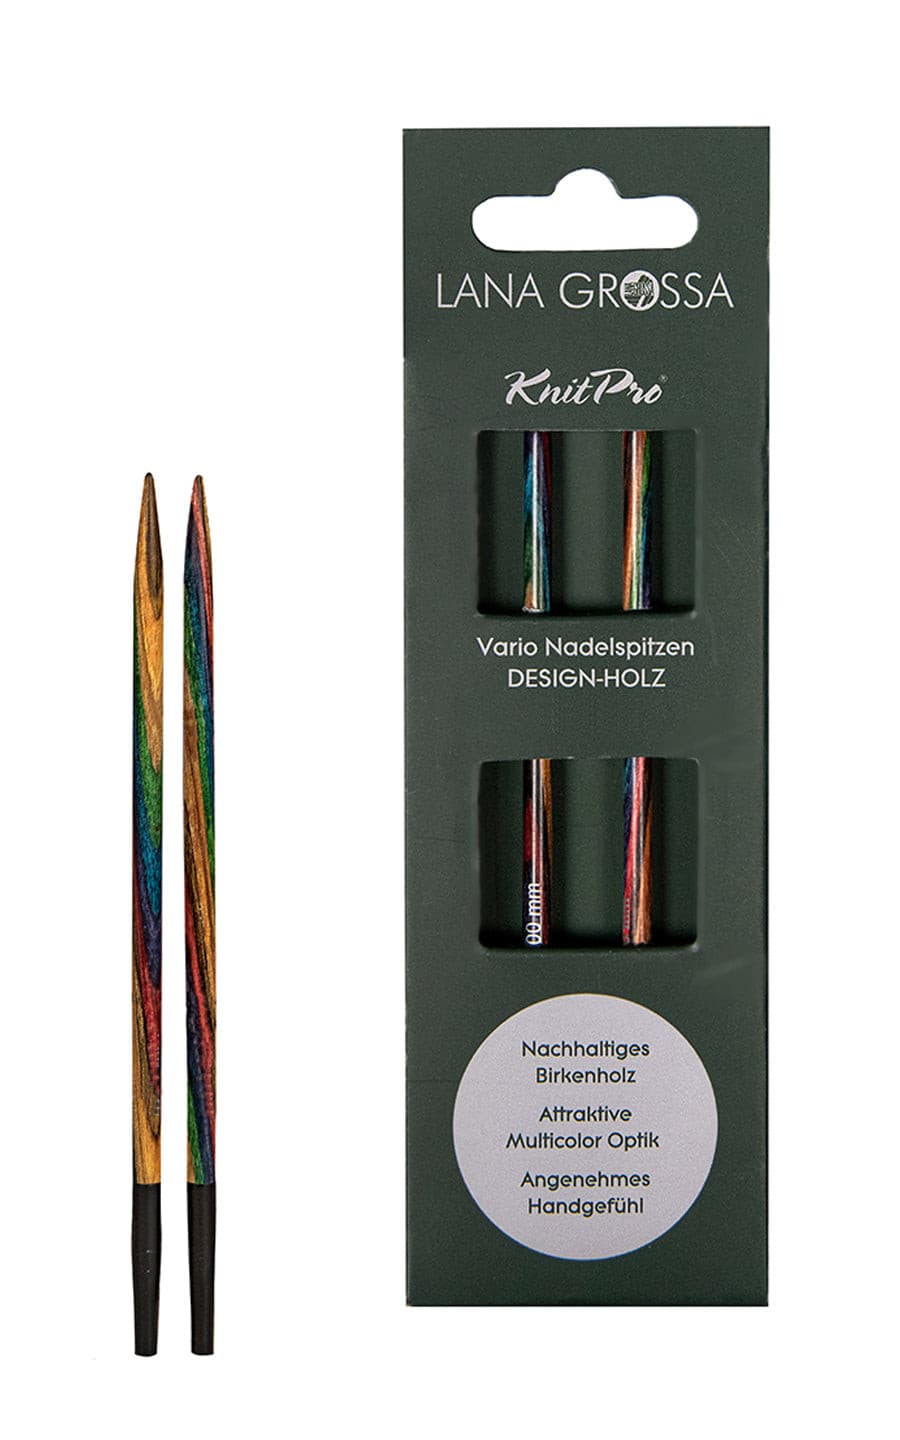 6,5 mm Nadelspitze Vario aus Holz - neue Verpackung von LANA GROSSA jetzt online kaufen bei OONIQUE